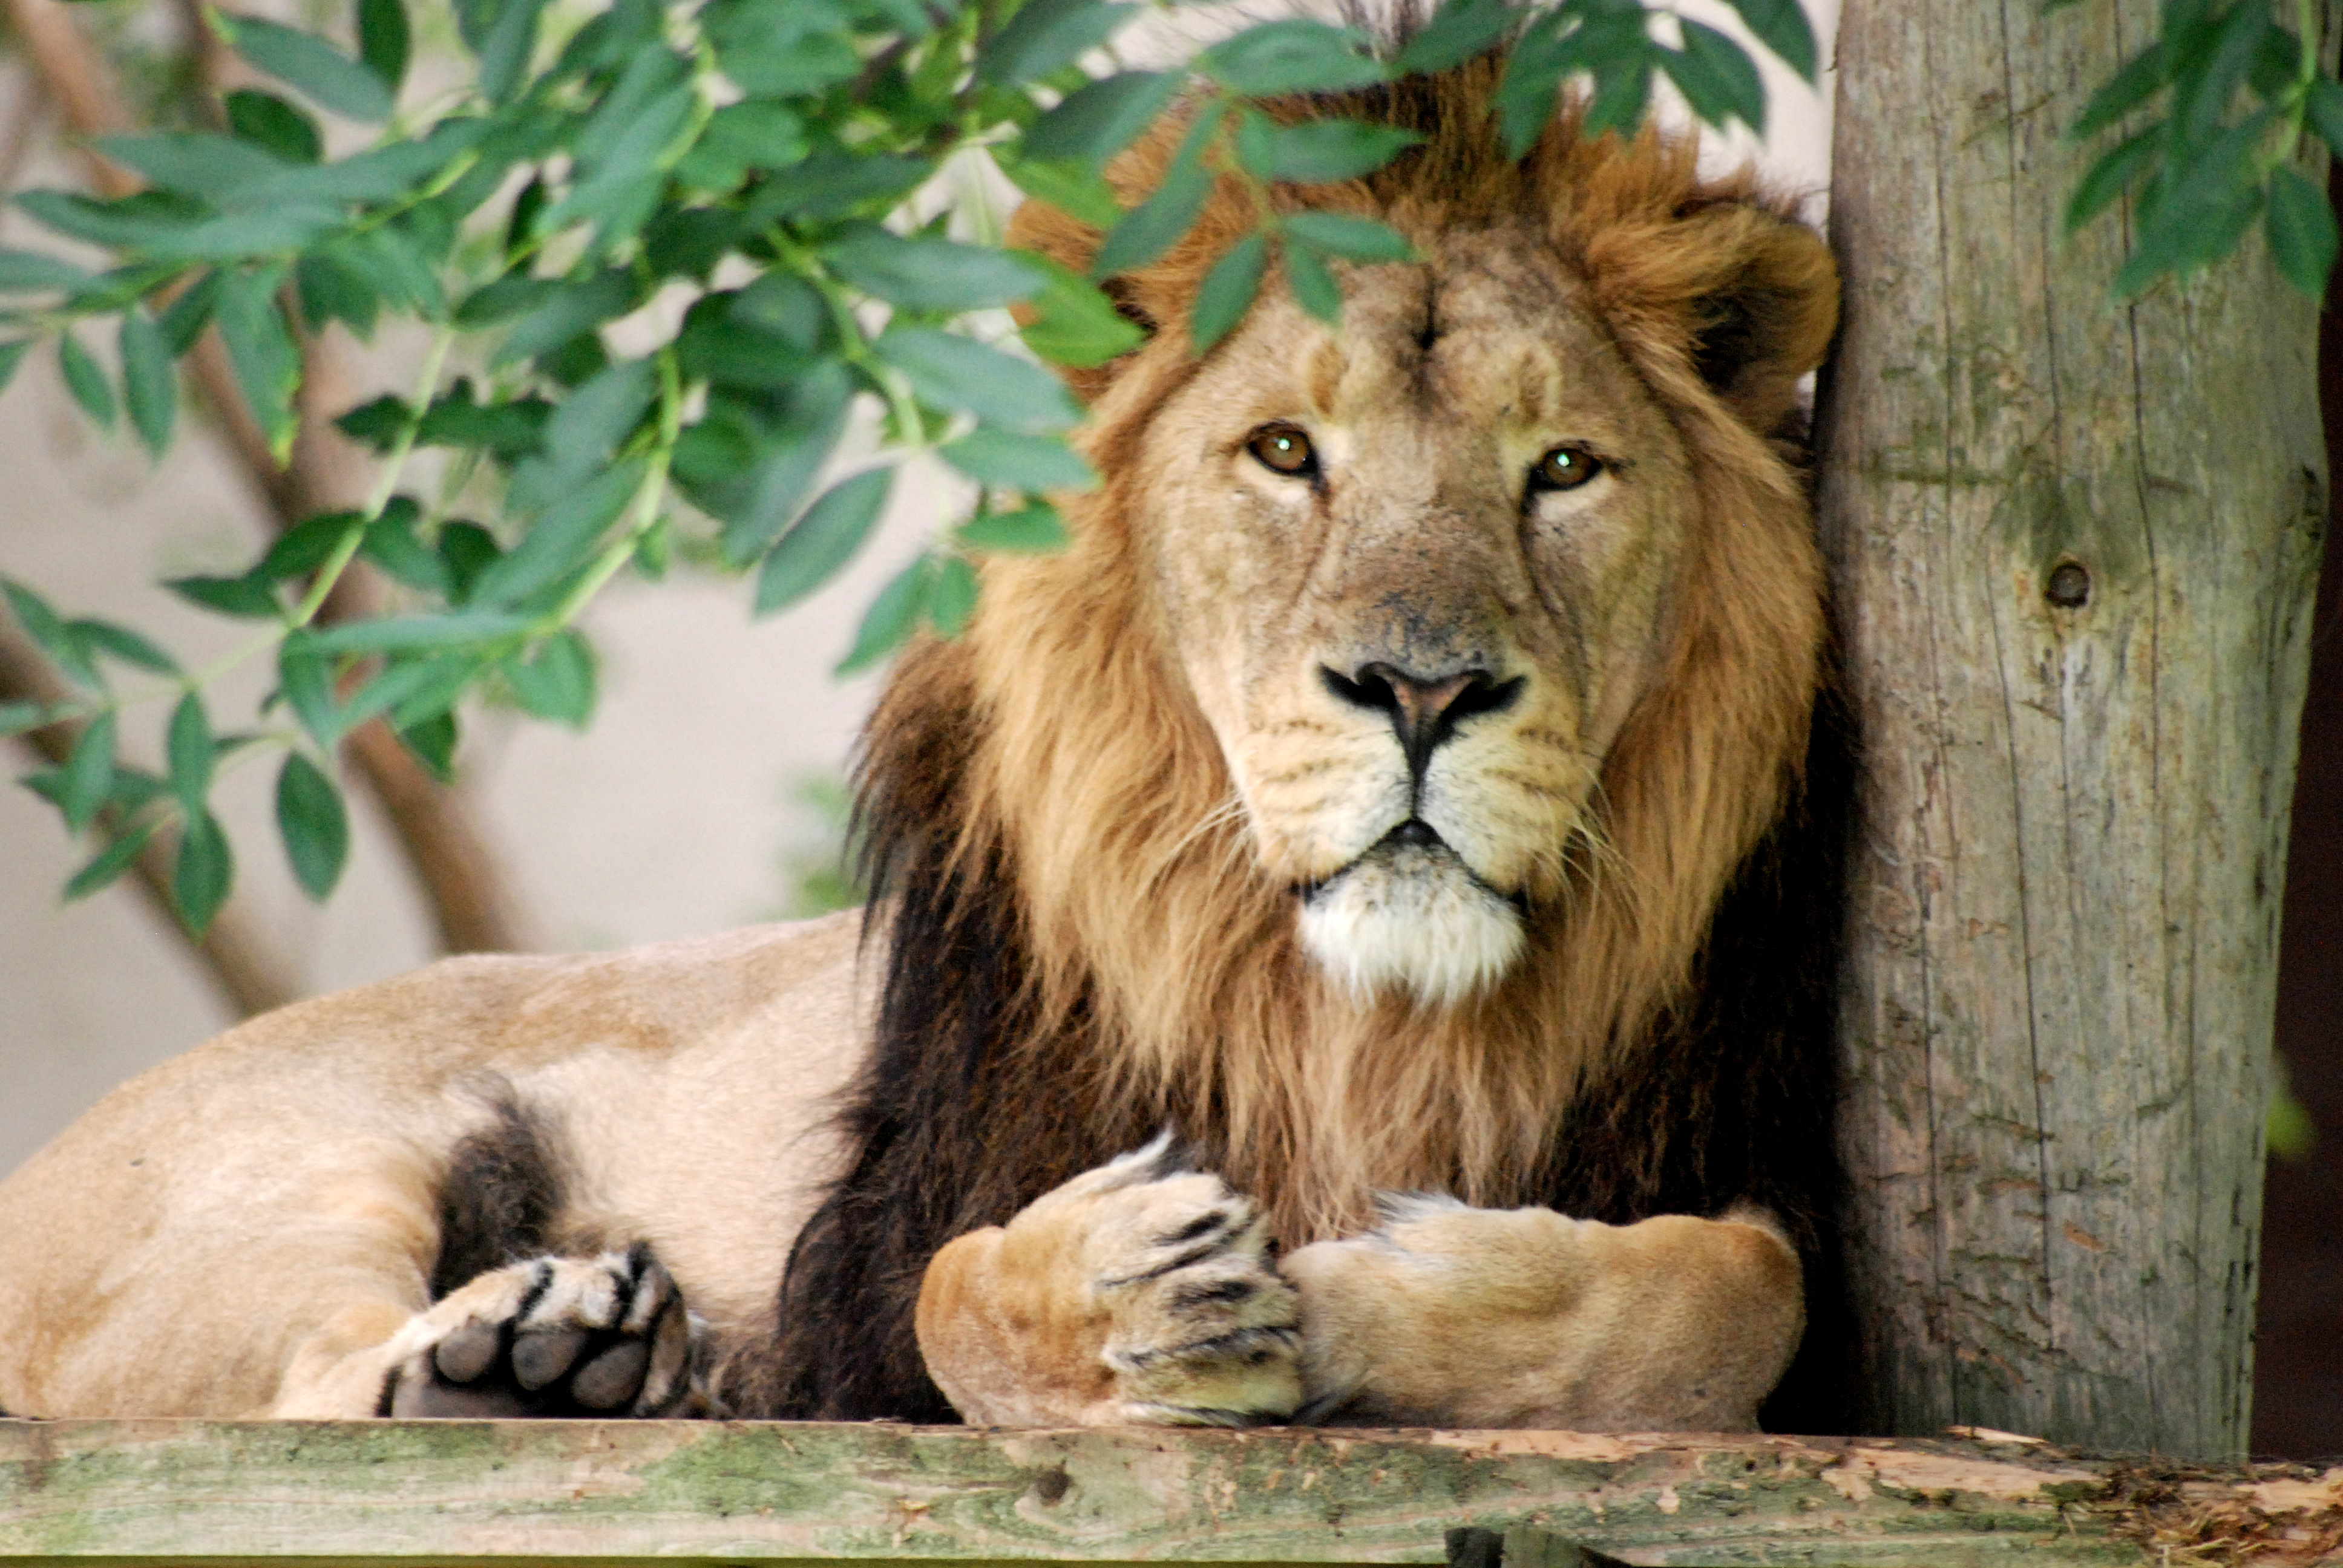 Egy cseh férfi kitalálta, hogy oroszlánokat fog pároztatni a hátsó kertjében, tragédia lett a vége